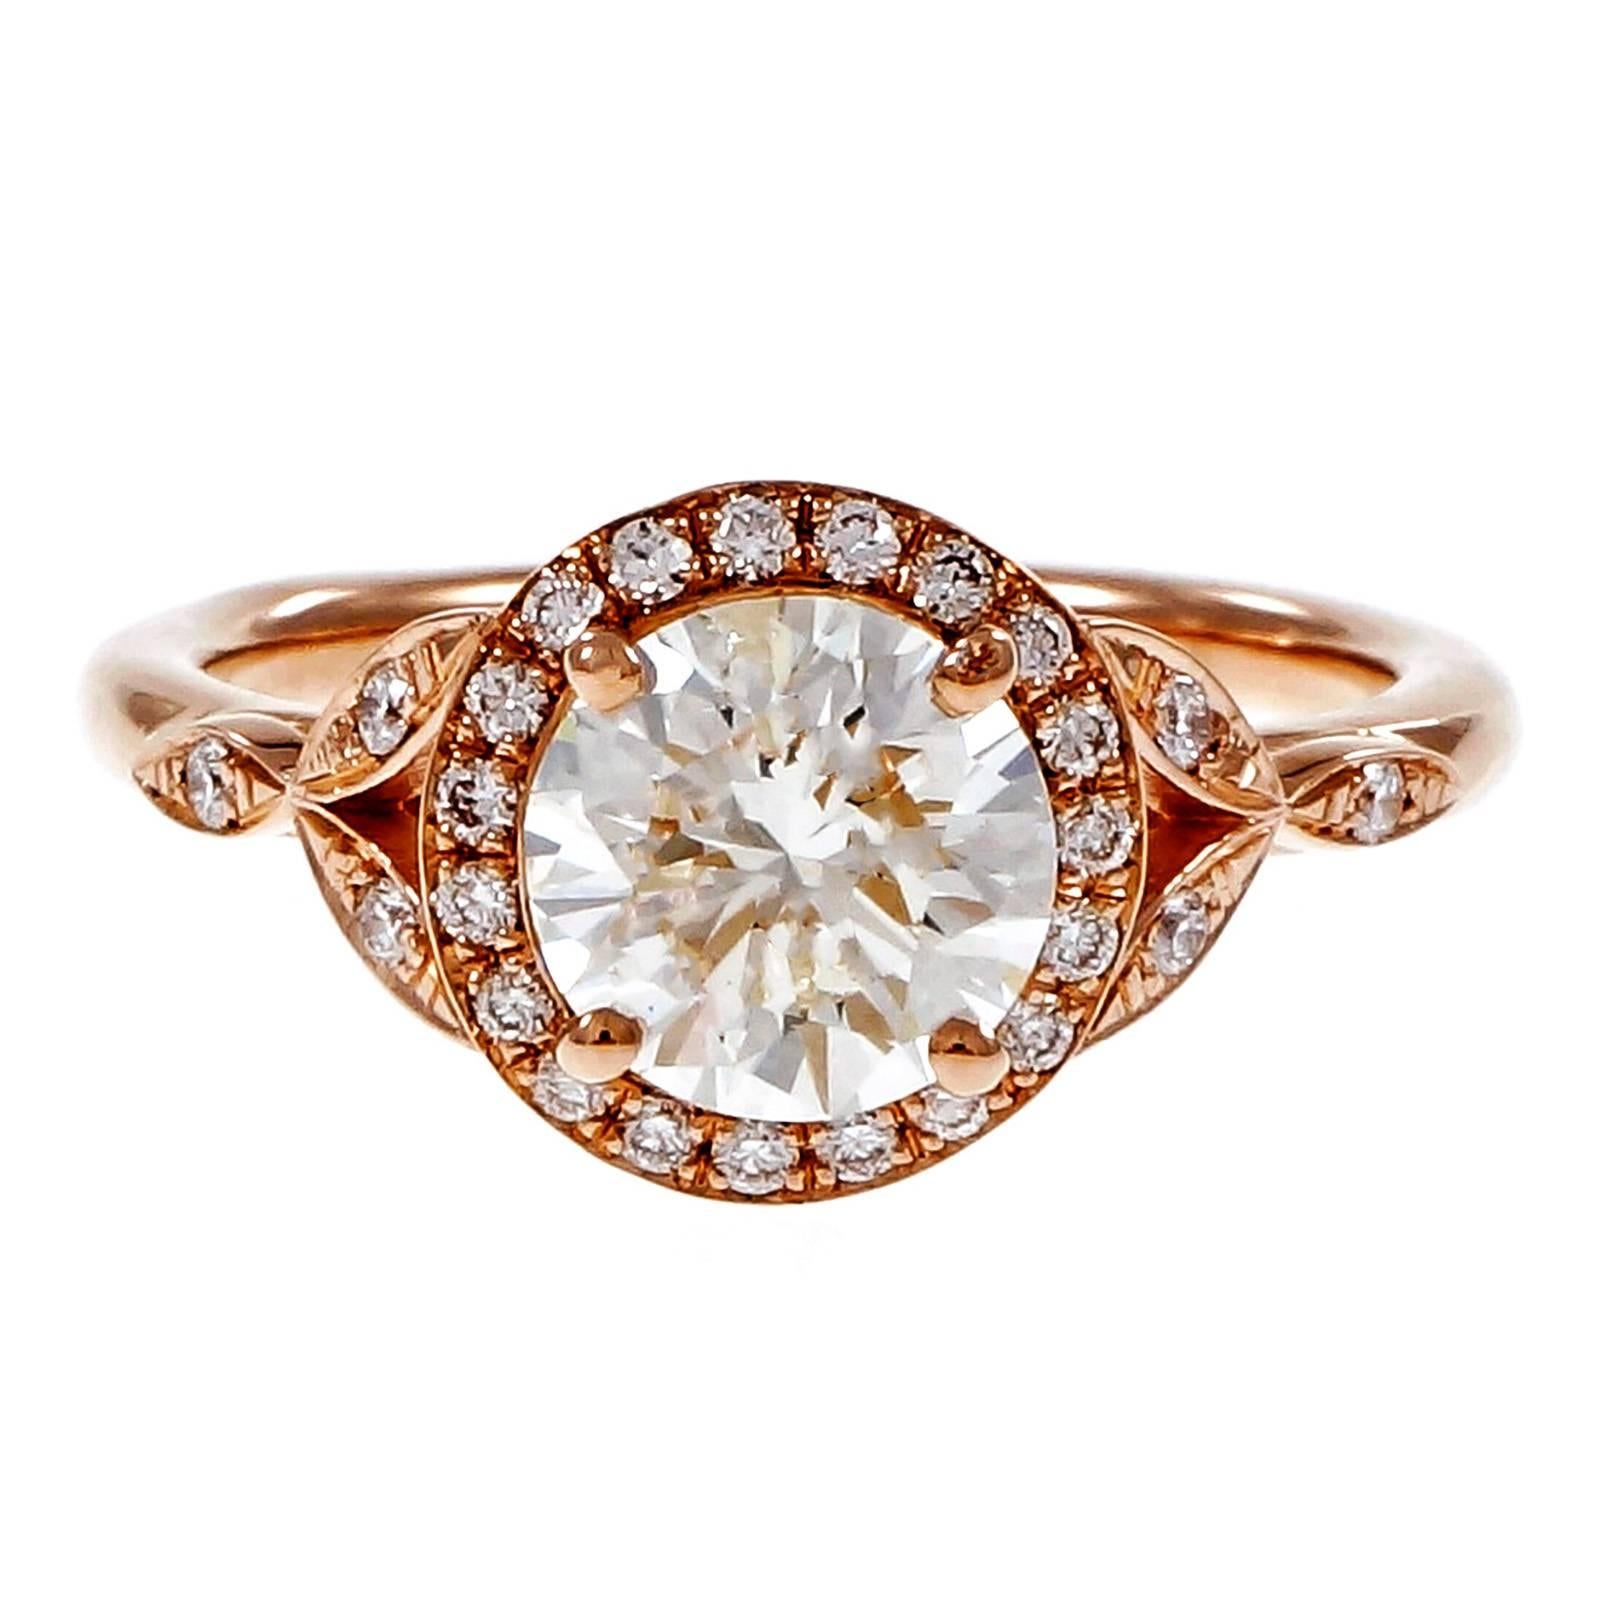 Peter Suchy Bague de fiançailles ronde à halo en or rose 14k avec côtés de style antique, conçue pour s'adapter à l'anneau de mariage. Certifié par le GIA. 

1 diamant rond, poids total approx. 1,37 ct, J, SI2, certificat GIA #1162654836
25 diamants